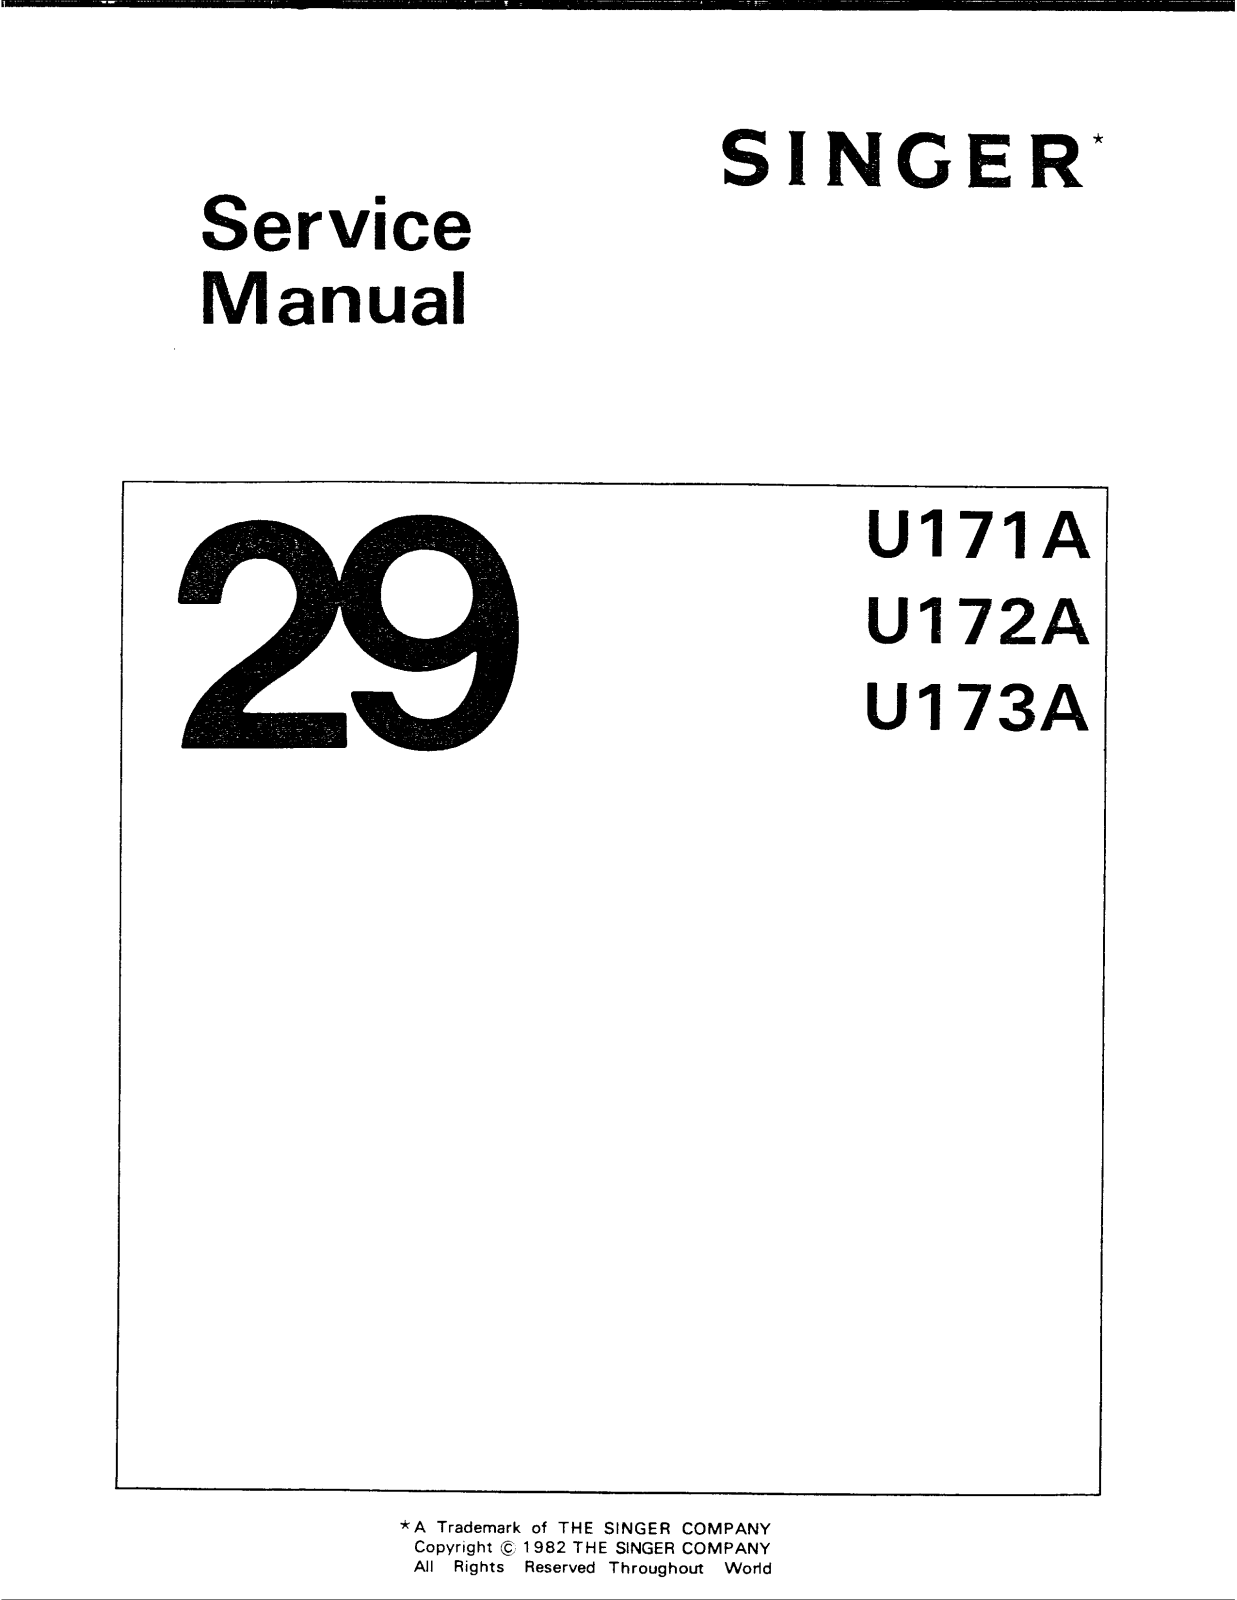 Singer 29 U173A, 29 U172A, 29 U171A Service Manual